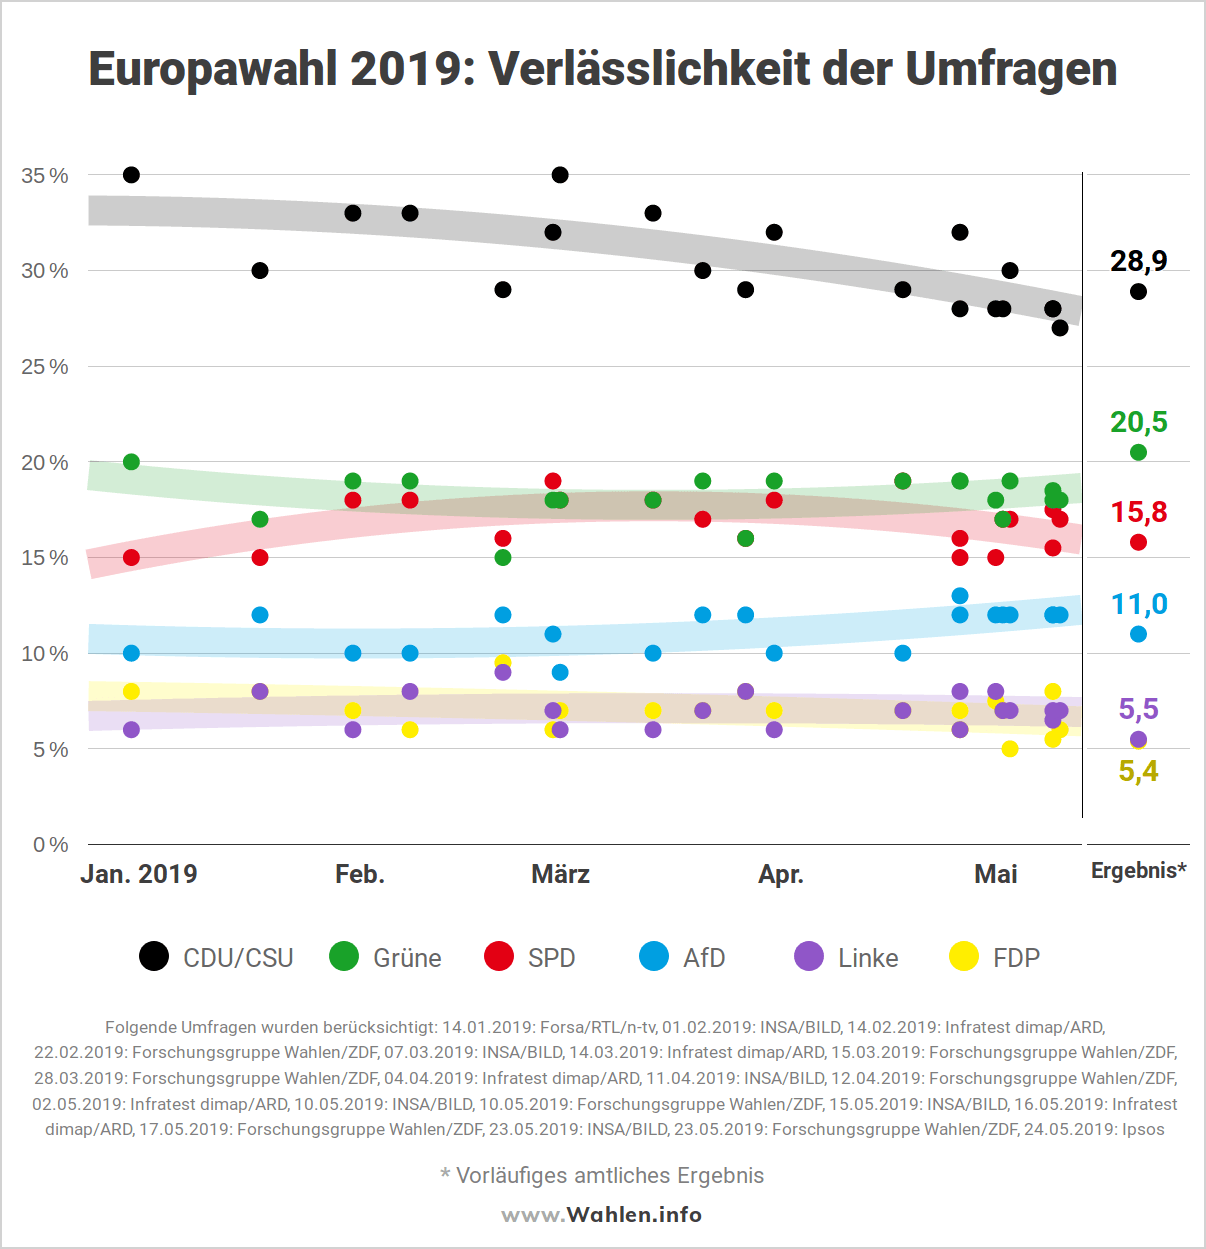 Europawahl 2019 - Verlässlichkeit der Umfragen bei Europawahlen